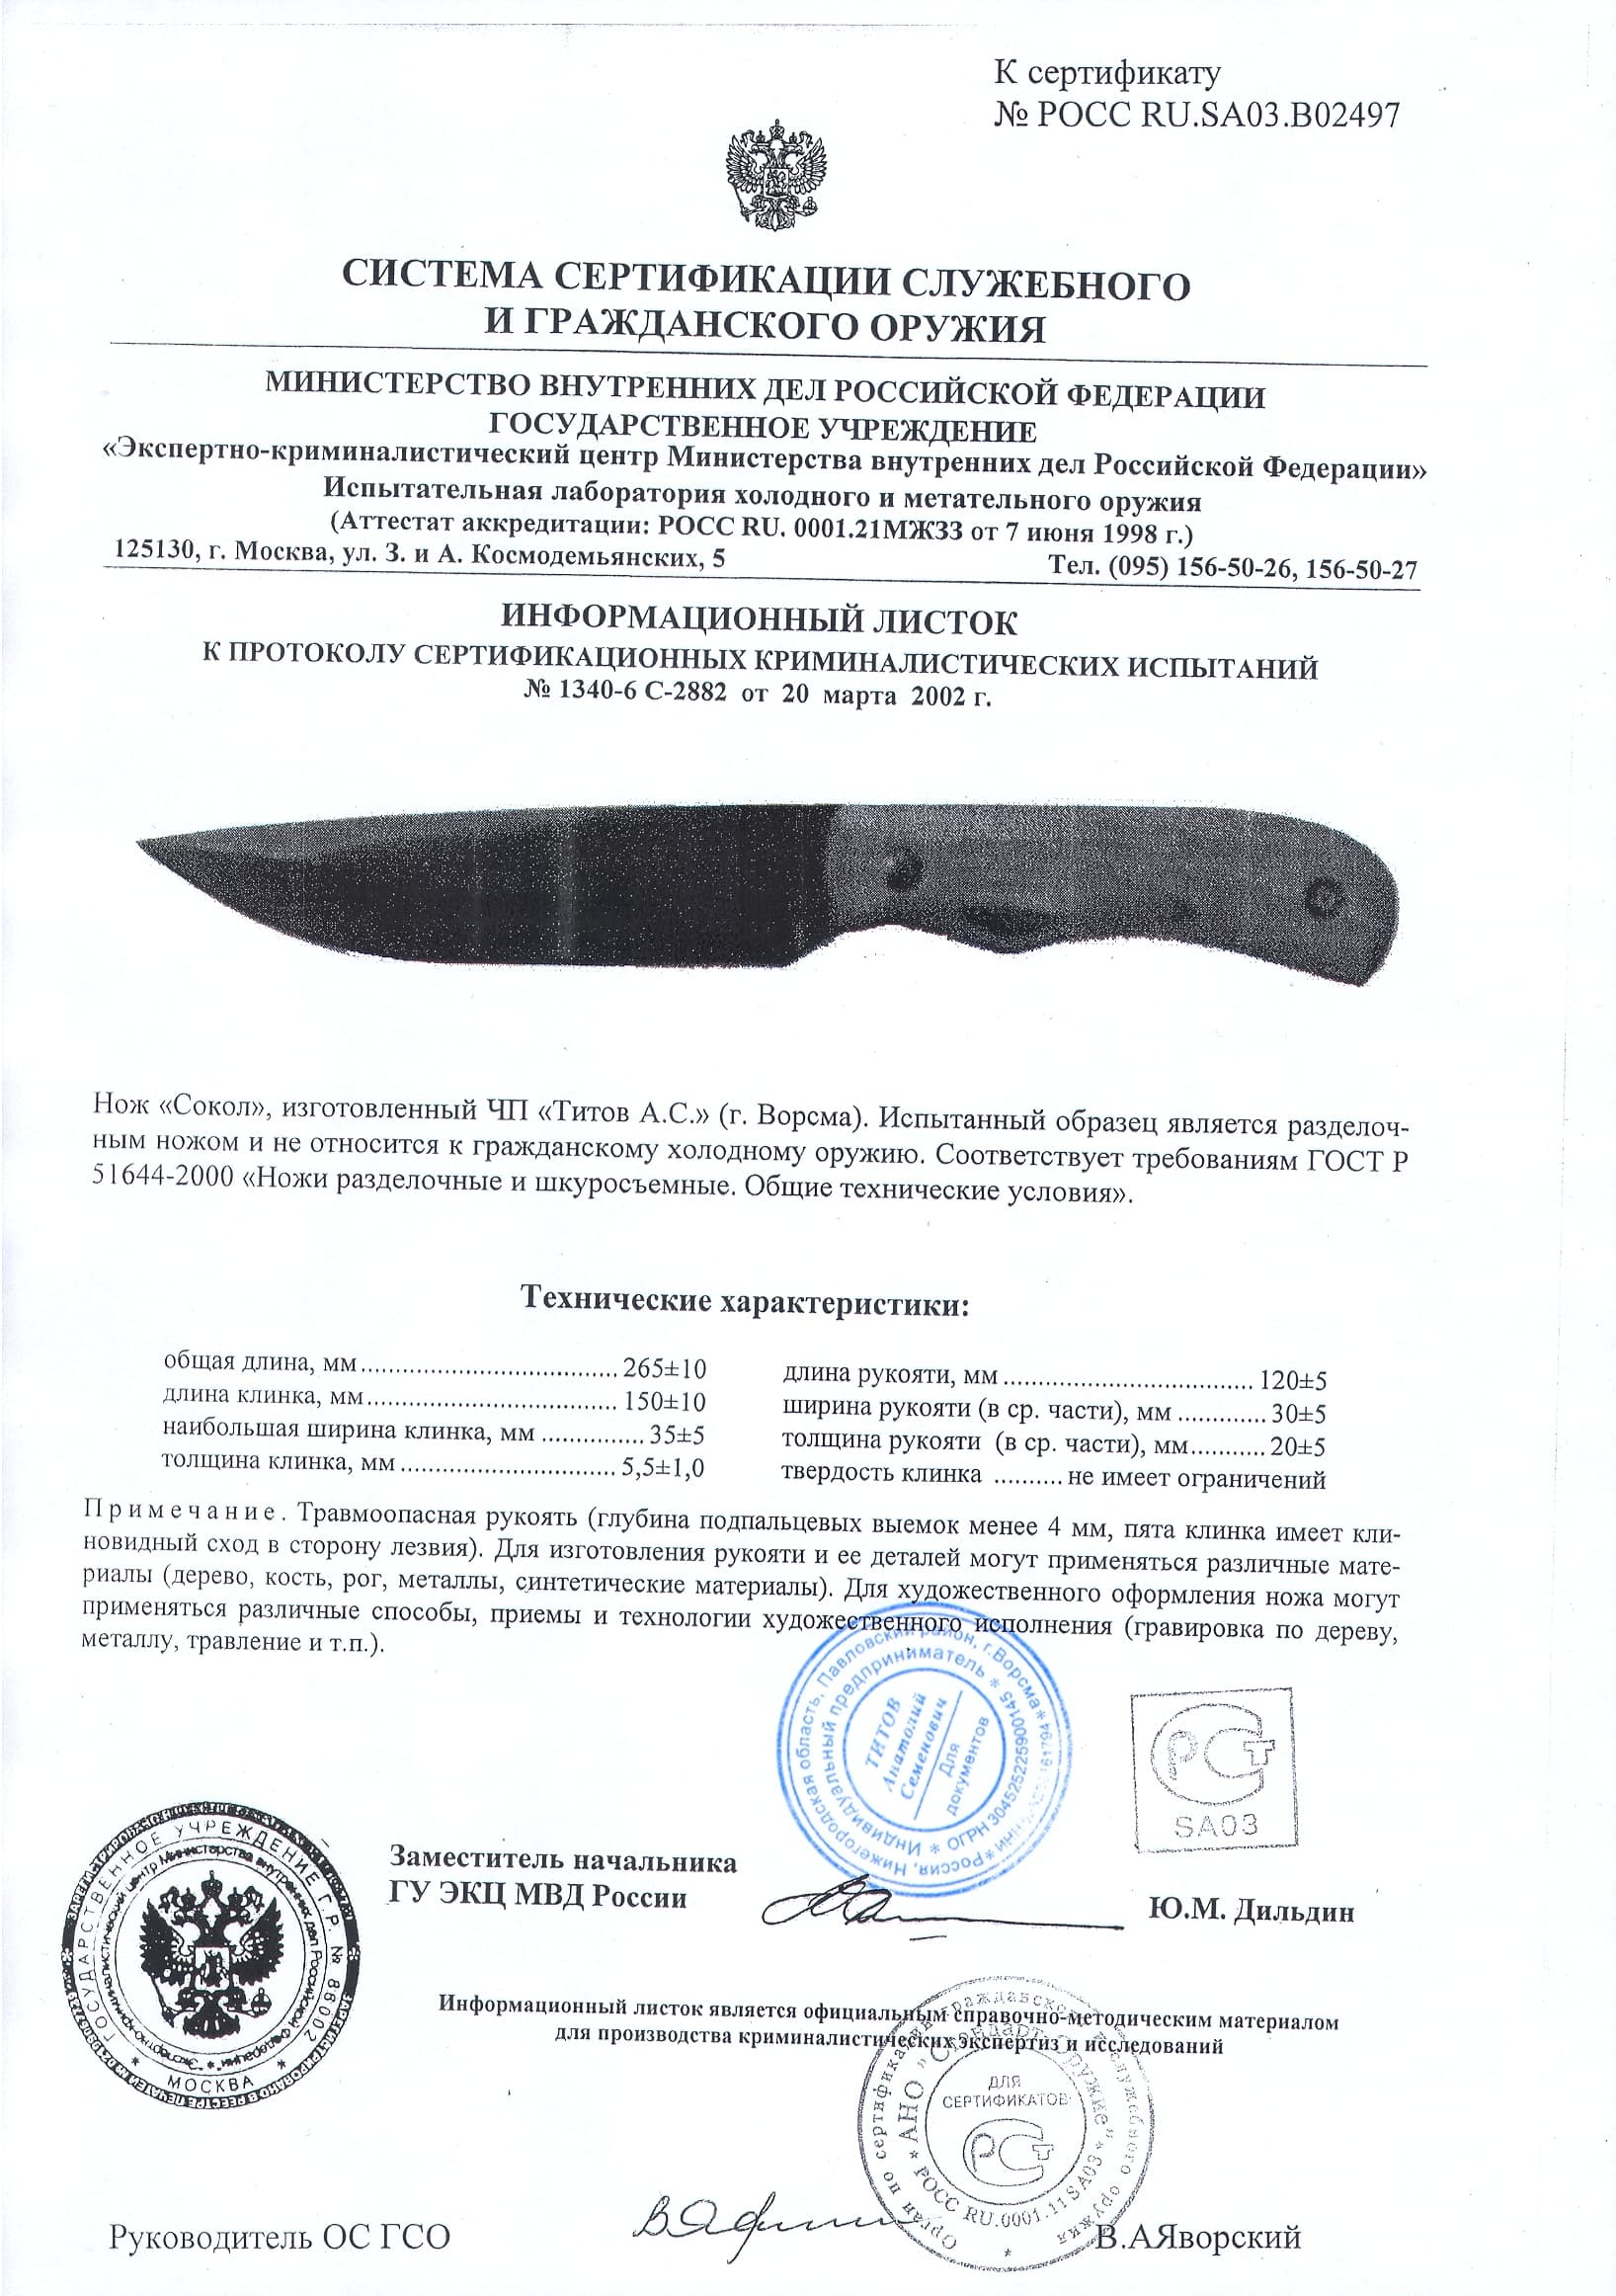 Допустимое лезвие ножа. Нож 4038в сертификат соответствия на нож охотничий. Нож длина клинка 125мм,ширина 30мм,длина рукоятки 120мм. Разрешенный нож для ношения. Документы на нож.